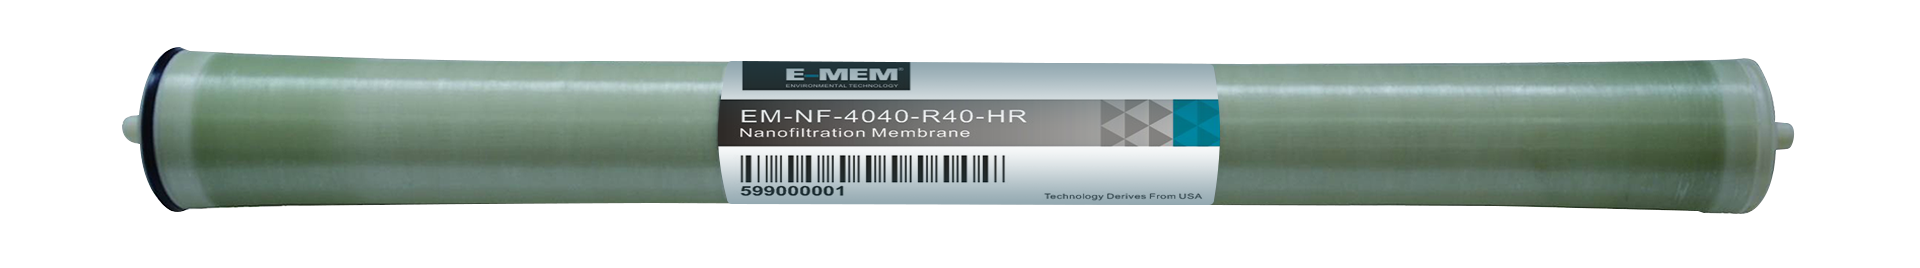 EM-NF-4040-R40-HR